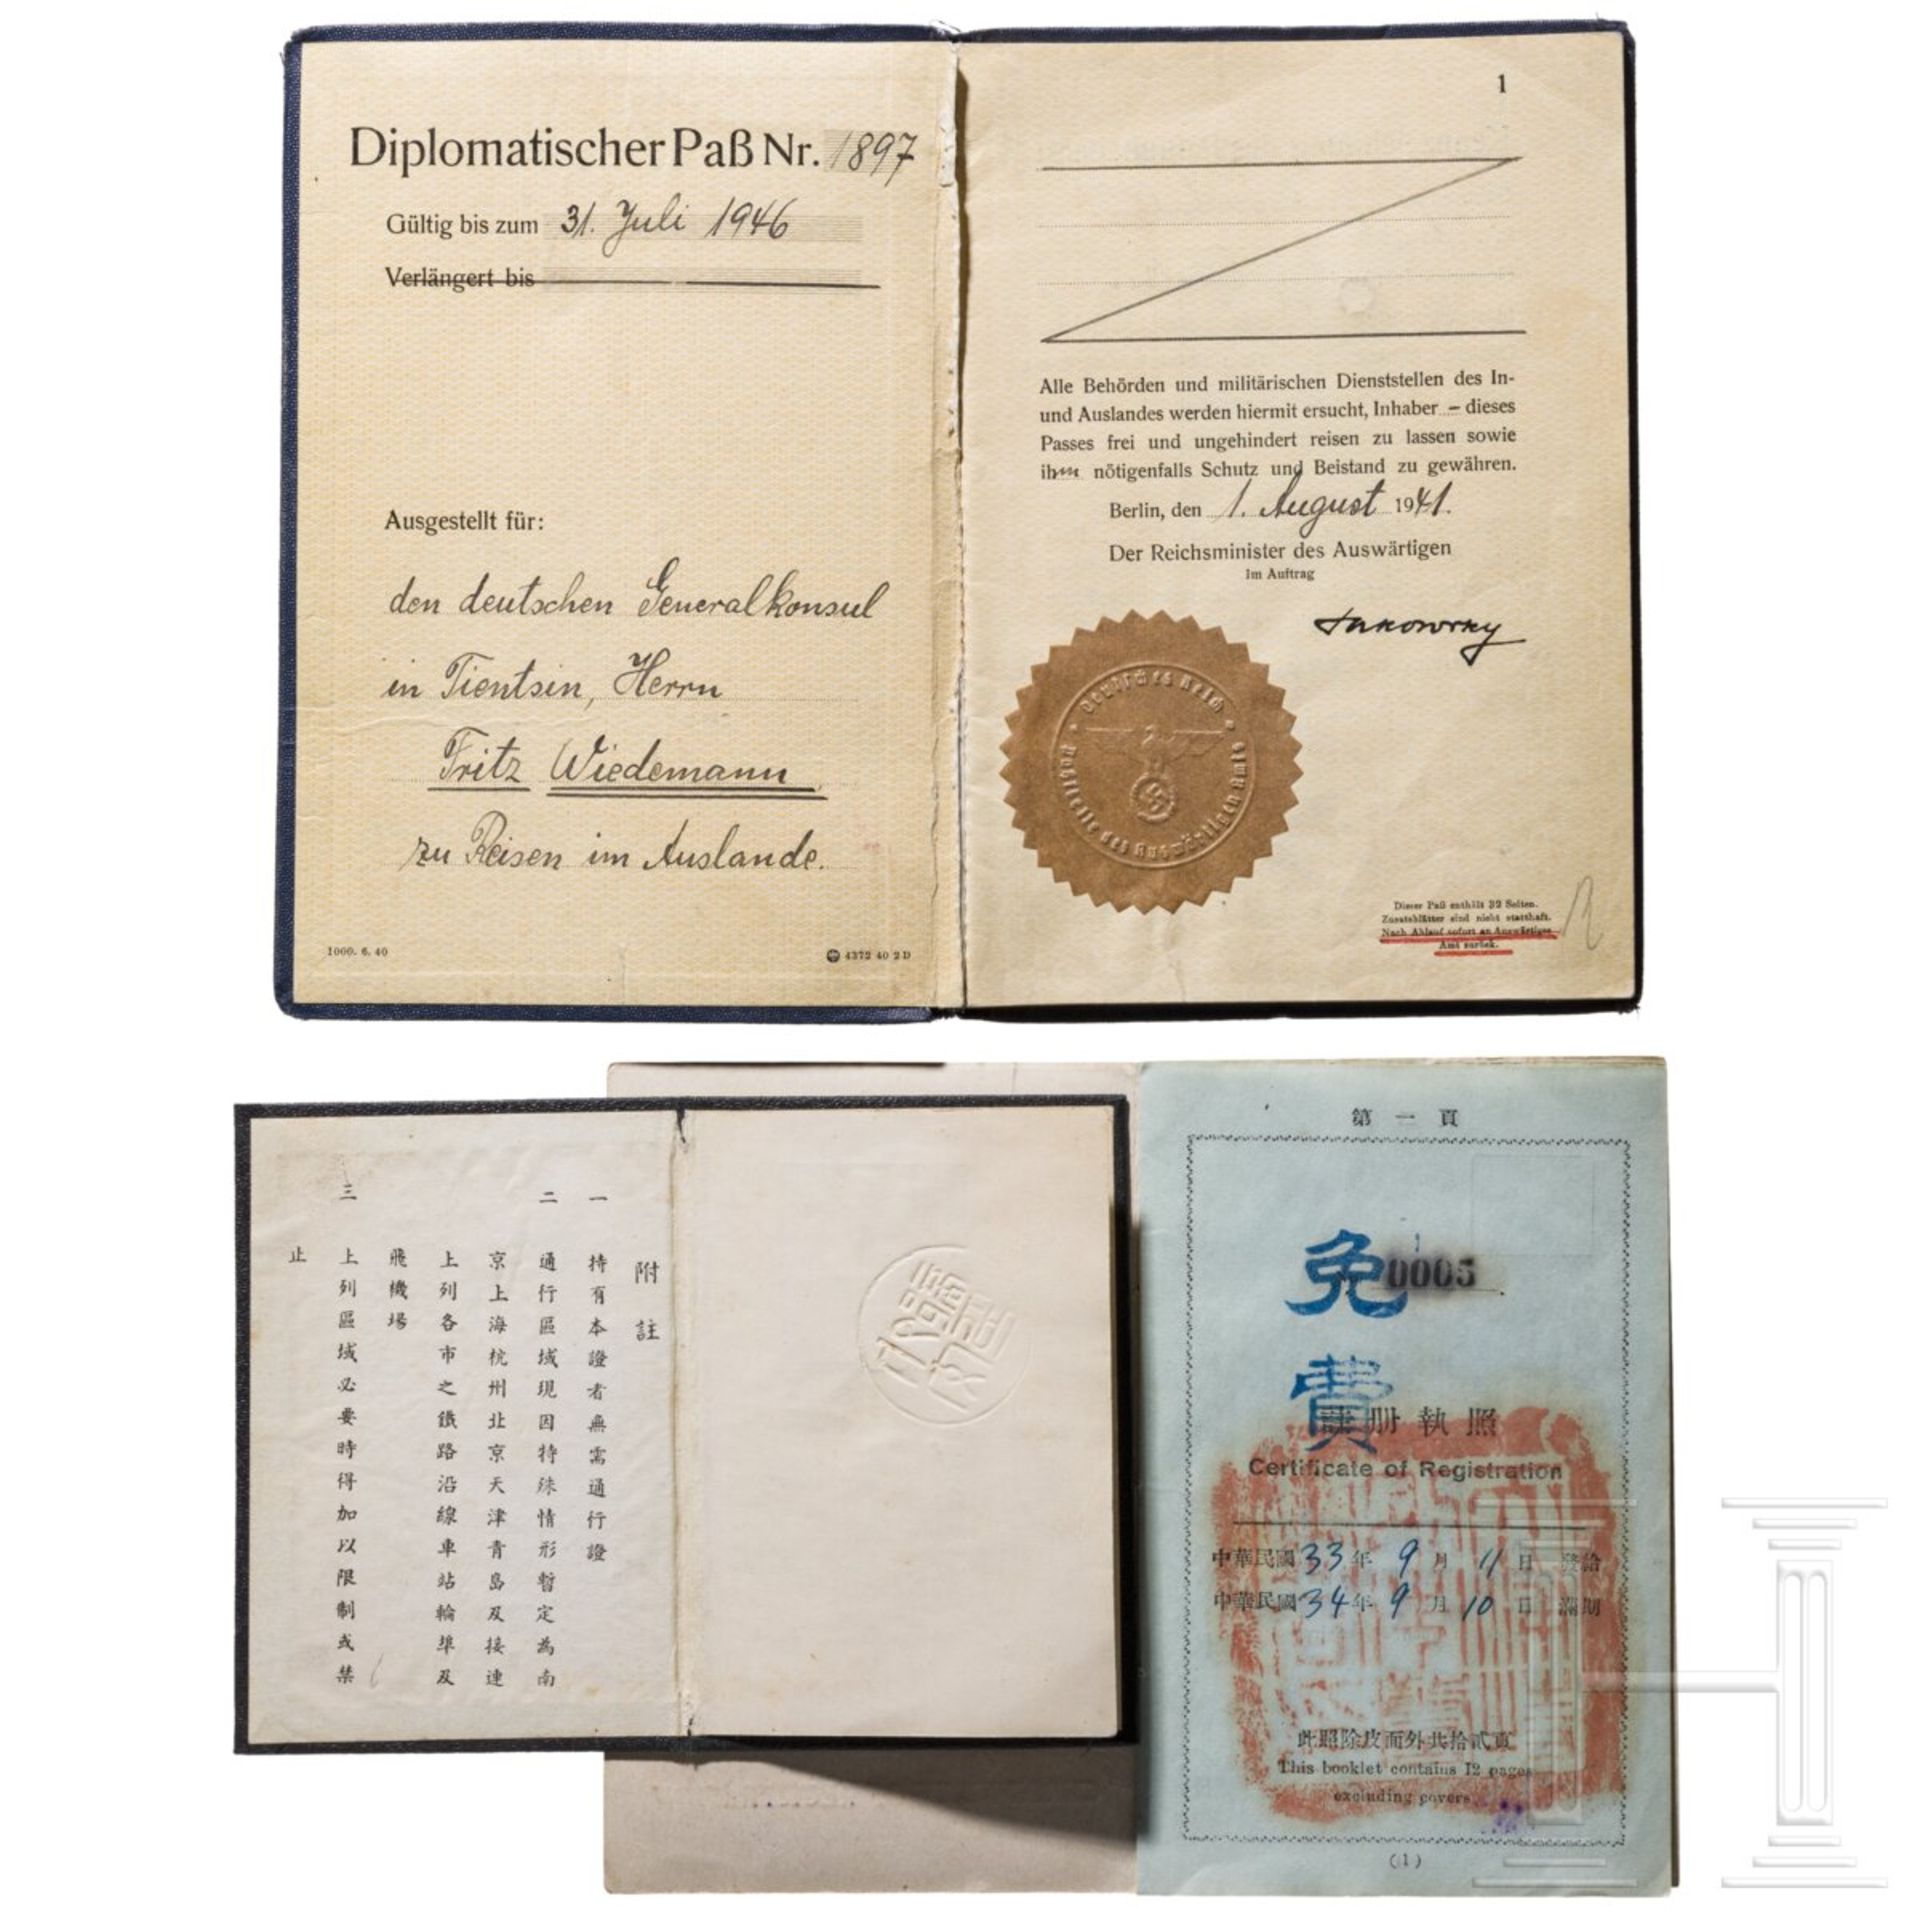 Fritz Wiedemann (1891 - 1970) - Diplomatenpass, Ausweise, Bücher und Karte aus seiner Zeit als Gener - Image 2 of 10